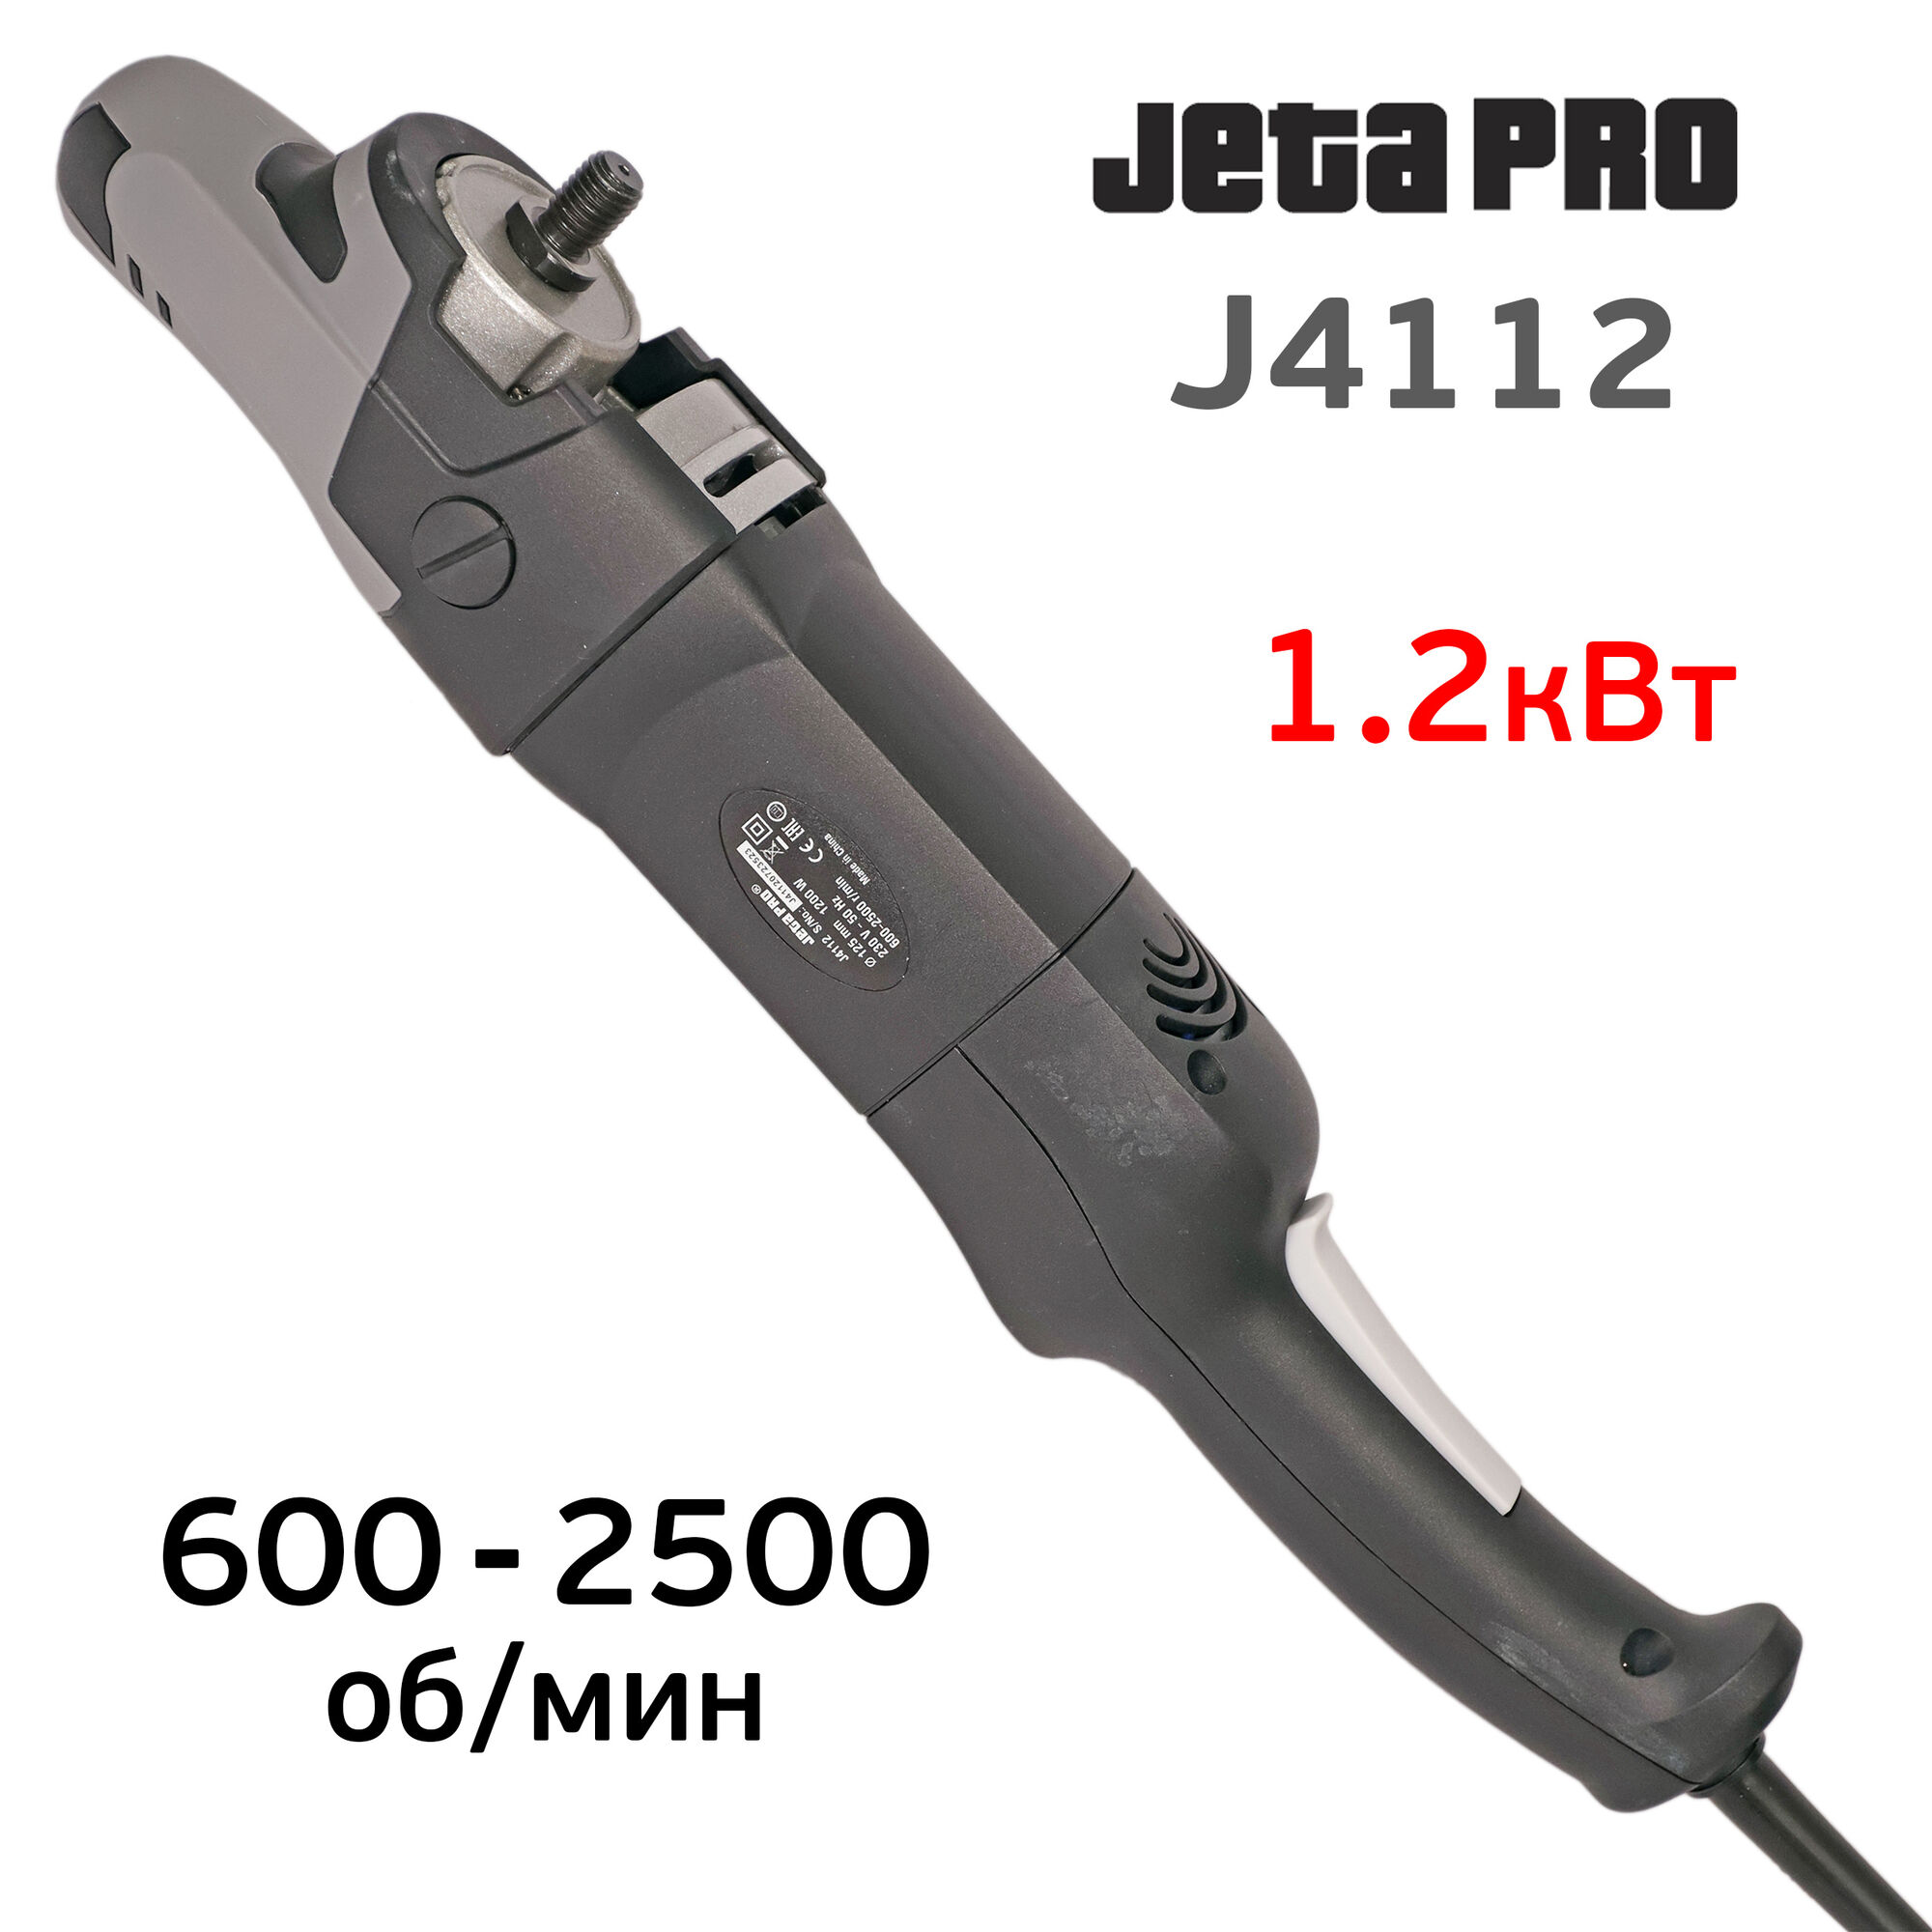 Полировальная машинка JetaPRO J4112 (1200Вт, 600-2500об/мин, 2.4кг) с вращательным типом движения 4